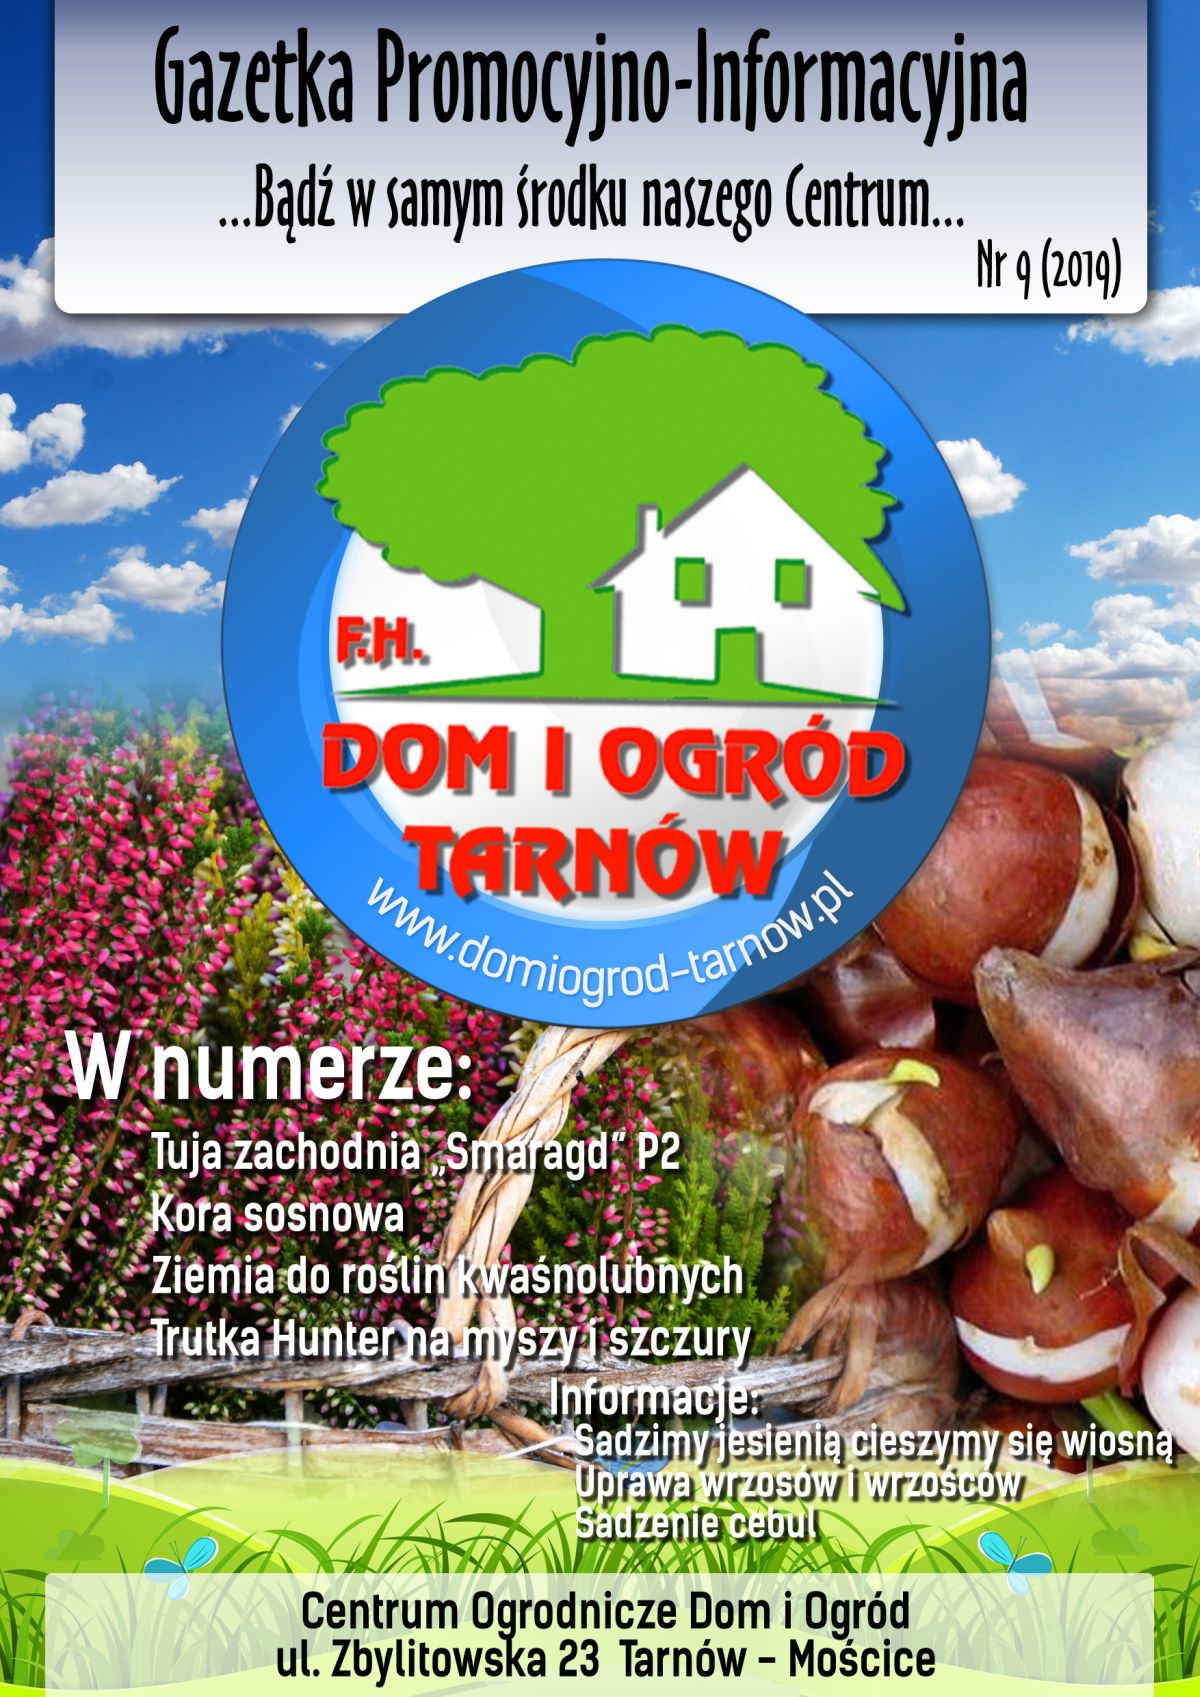 Gazetka Promocyjno-Informacyjna - 09/2019